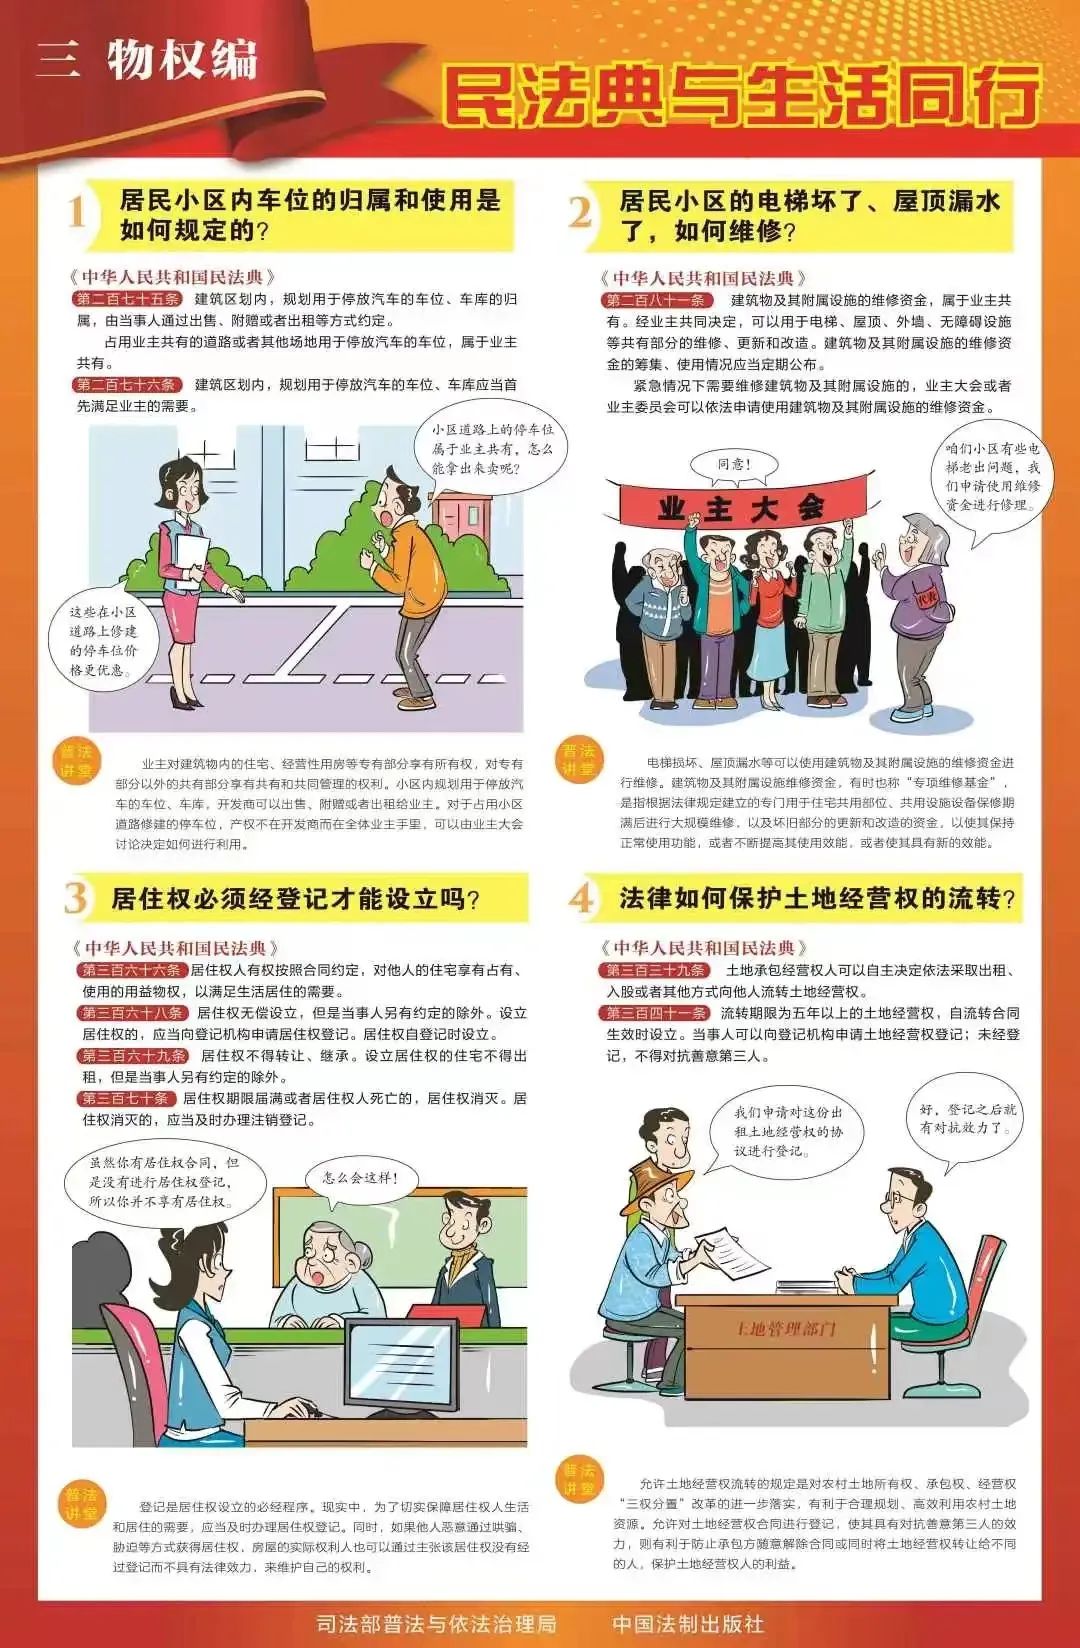 民法典学习宣传丨九张挂图带您速览民法典(图4)